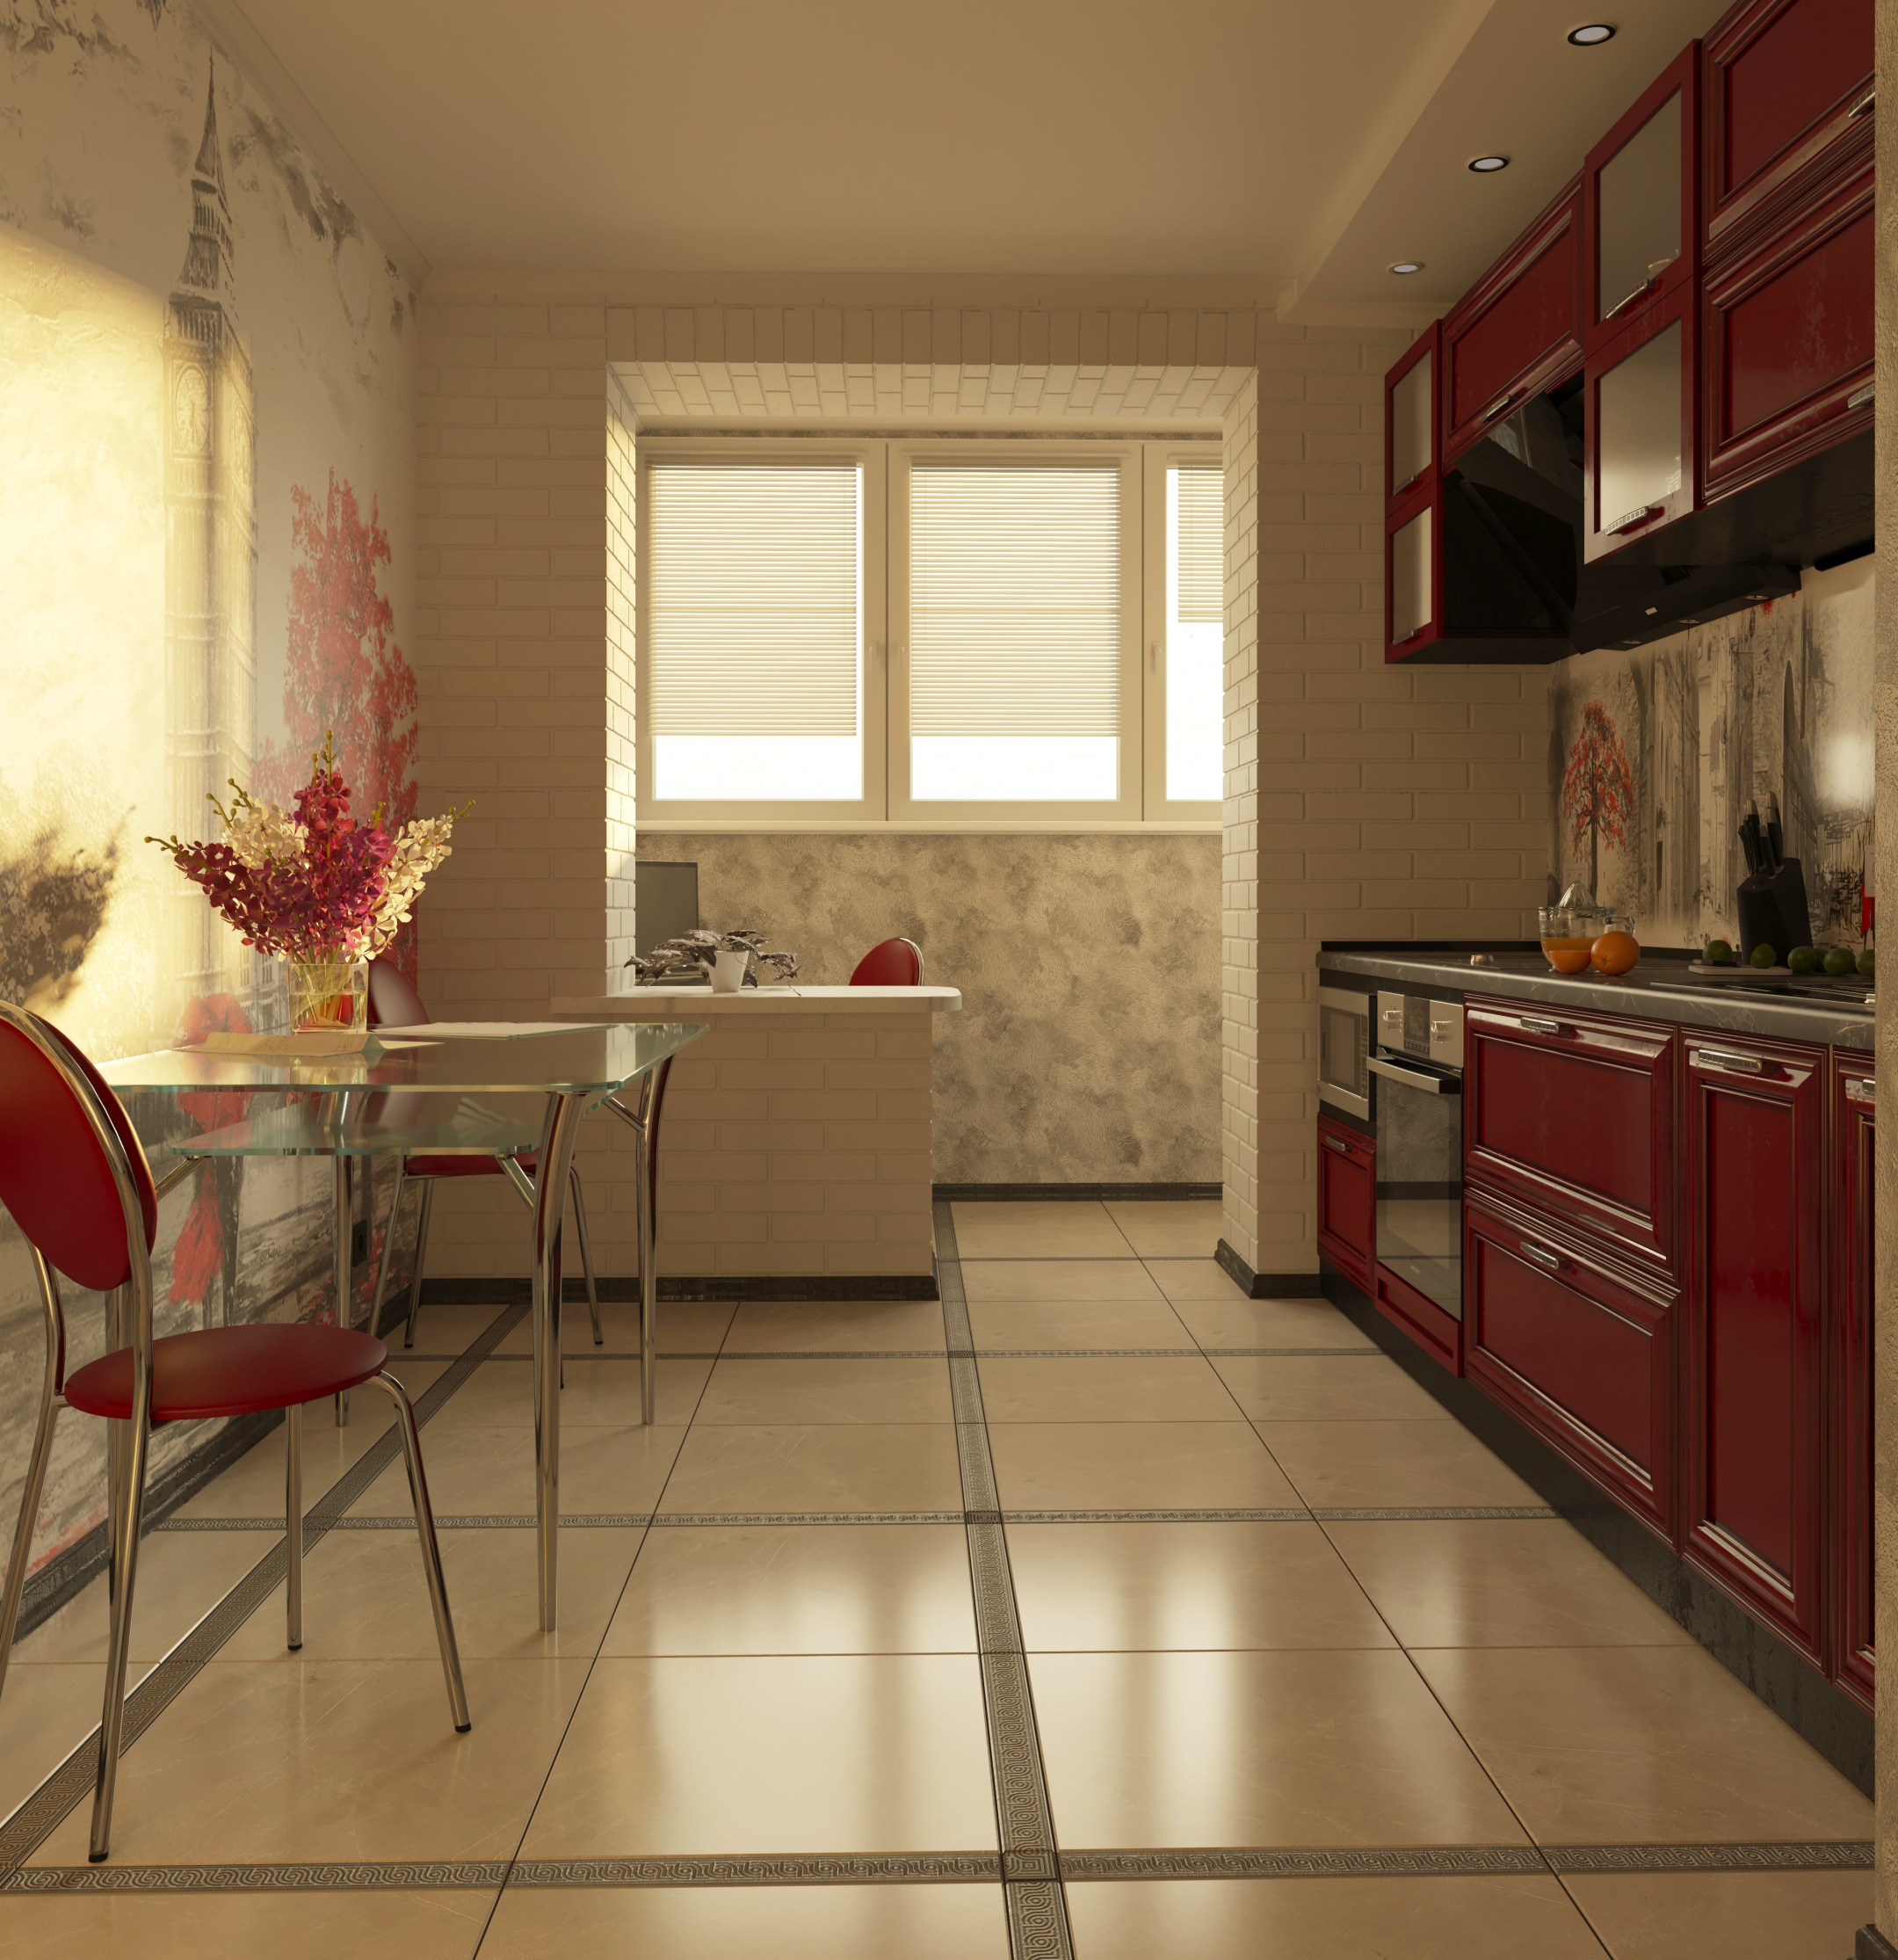 imagen de cocina de dos habitaciones en 3d max corona render